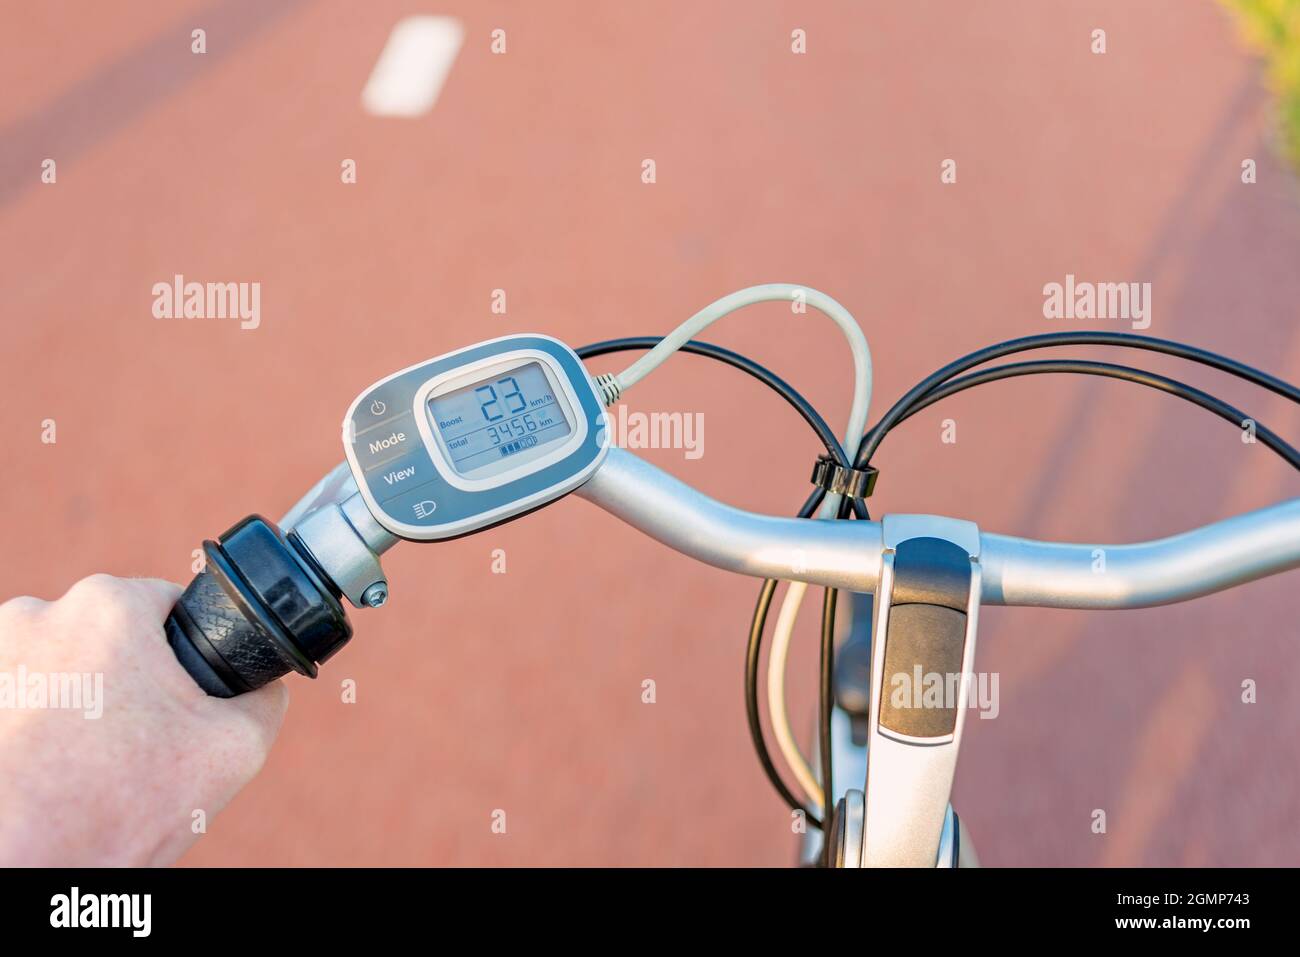 Perspectiva en primera persona en el panel de control del manillar de la bicicleta eléctrica mientras conduce por el carril de la bicicleta Foto de stock